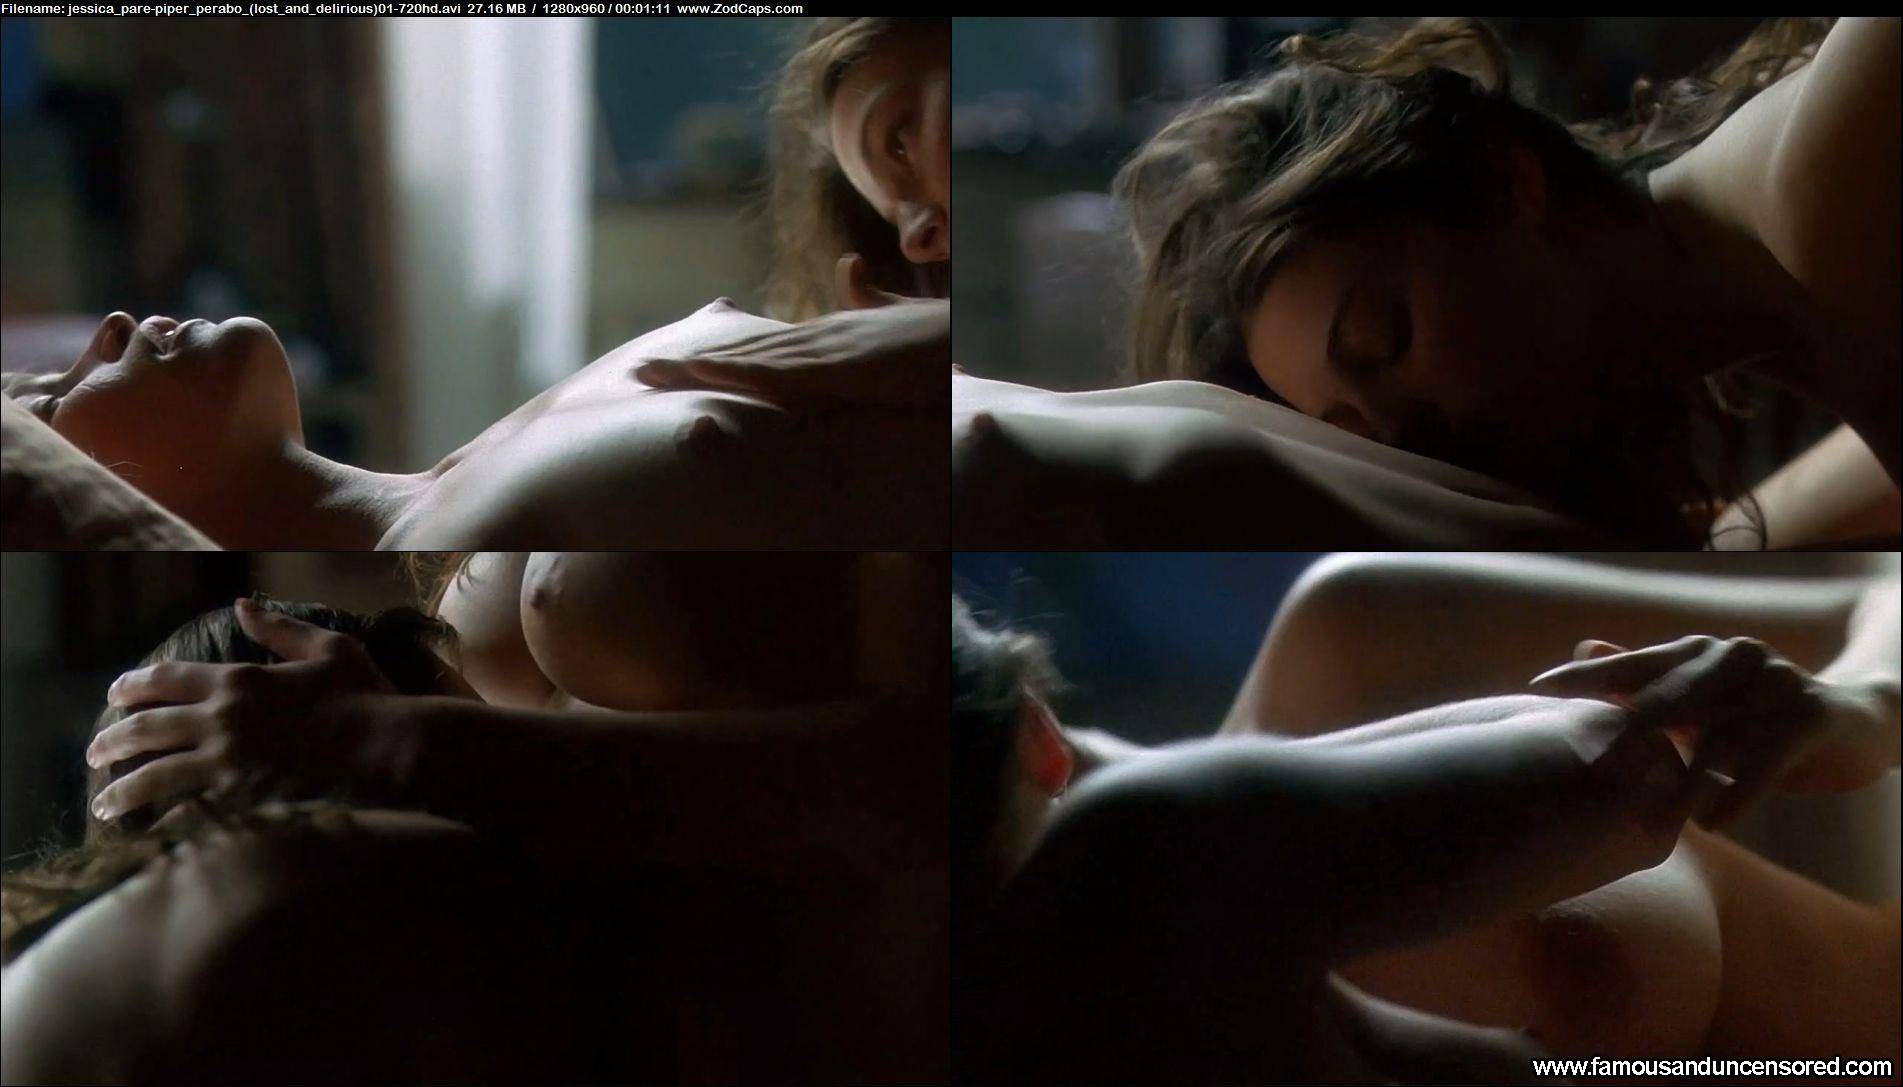 Piper perabo nude scene - 🧡 Piper perabo nude leaked pics Naked b...